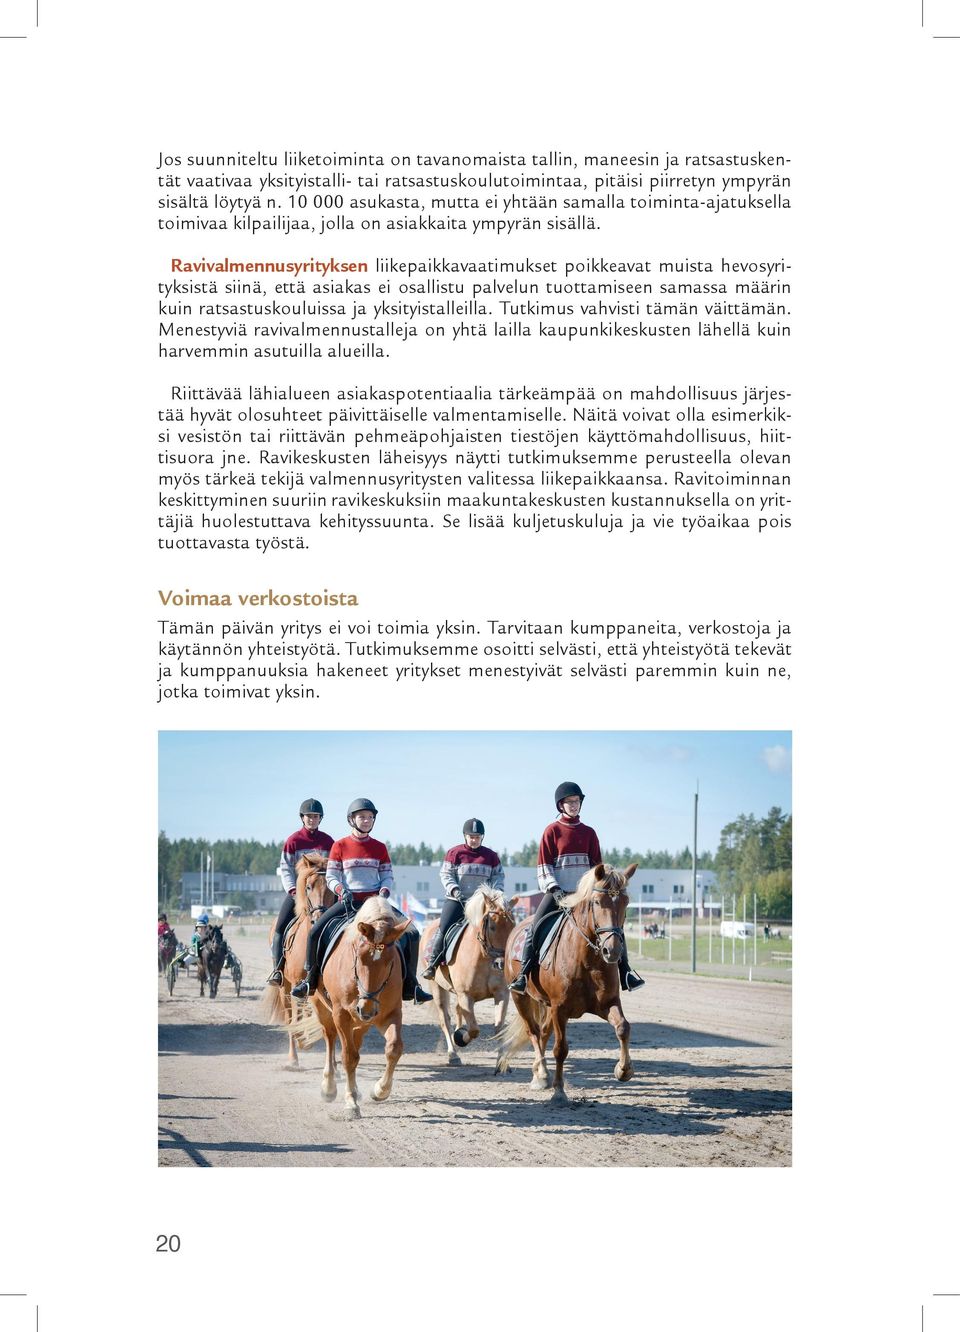 Ravivalmennusyrityksen liikepaikkavaatimukset poikkeavat muista hevosyrityksistä siinä, että asiakas ei osallistu palvelun tuottamiseen samassa määrin kuin ratsastuskouluissa ja yksityistalleilla.